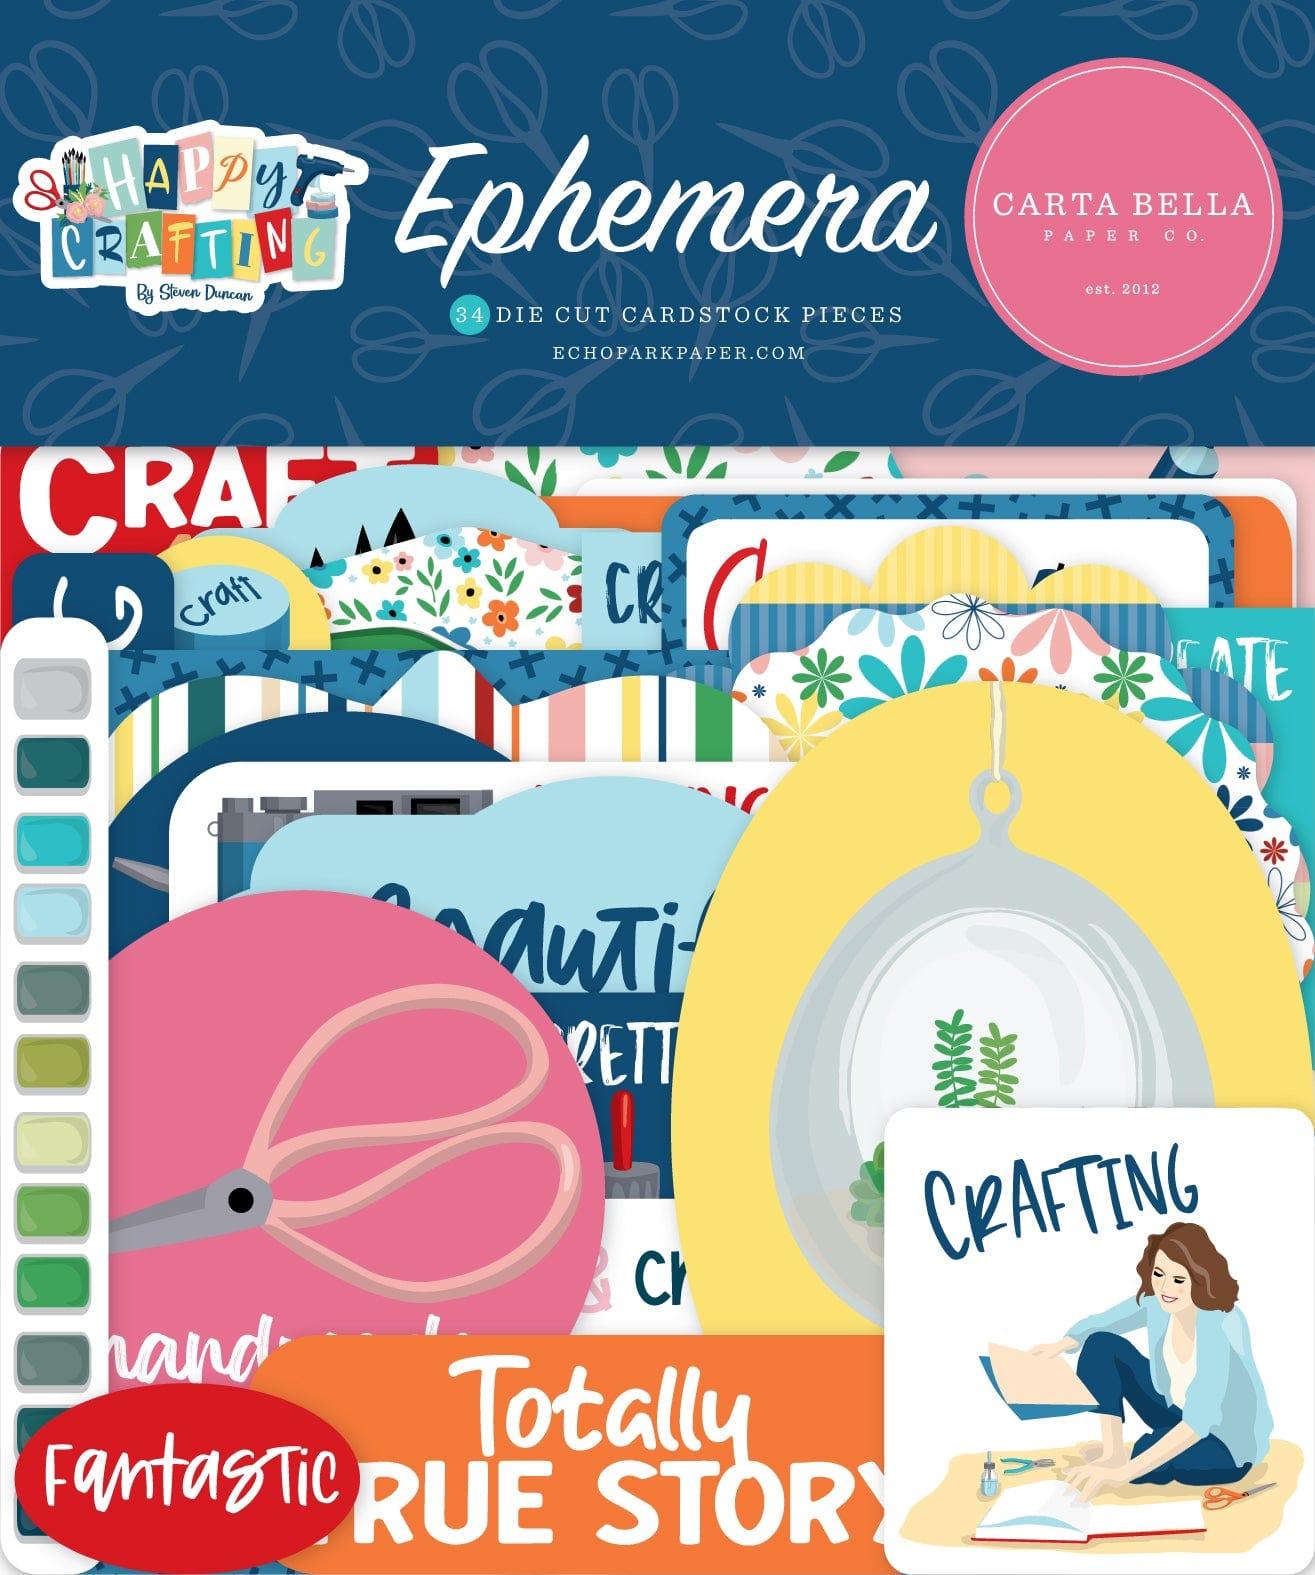 Happy Crafting Collection Scrapbook Ephemera by Carta Bella - Scrapbook Supply Companies